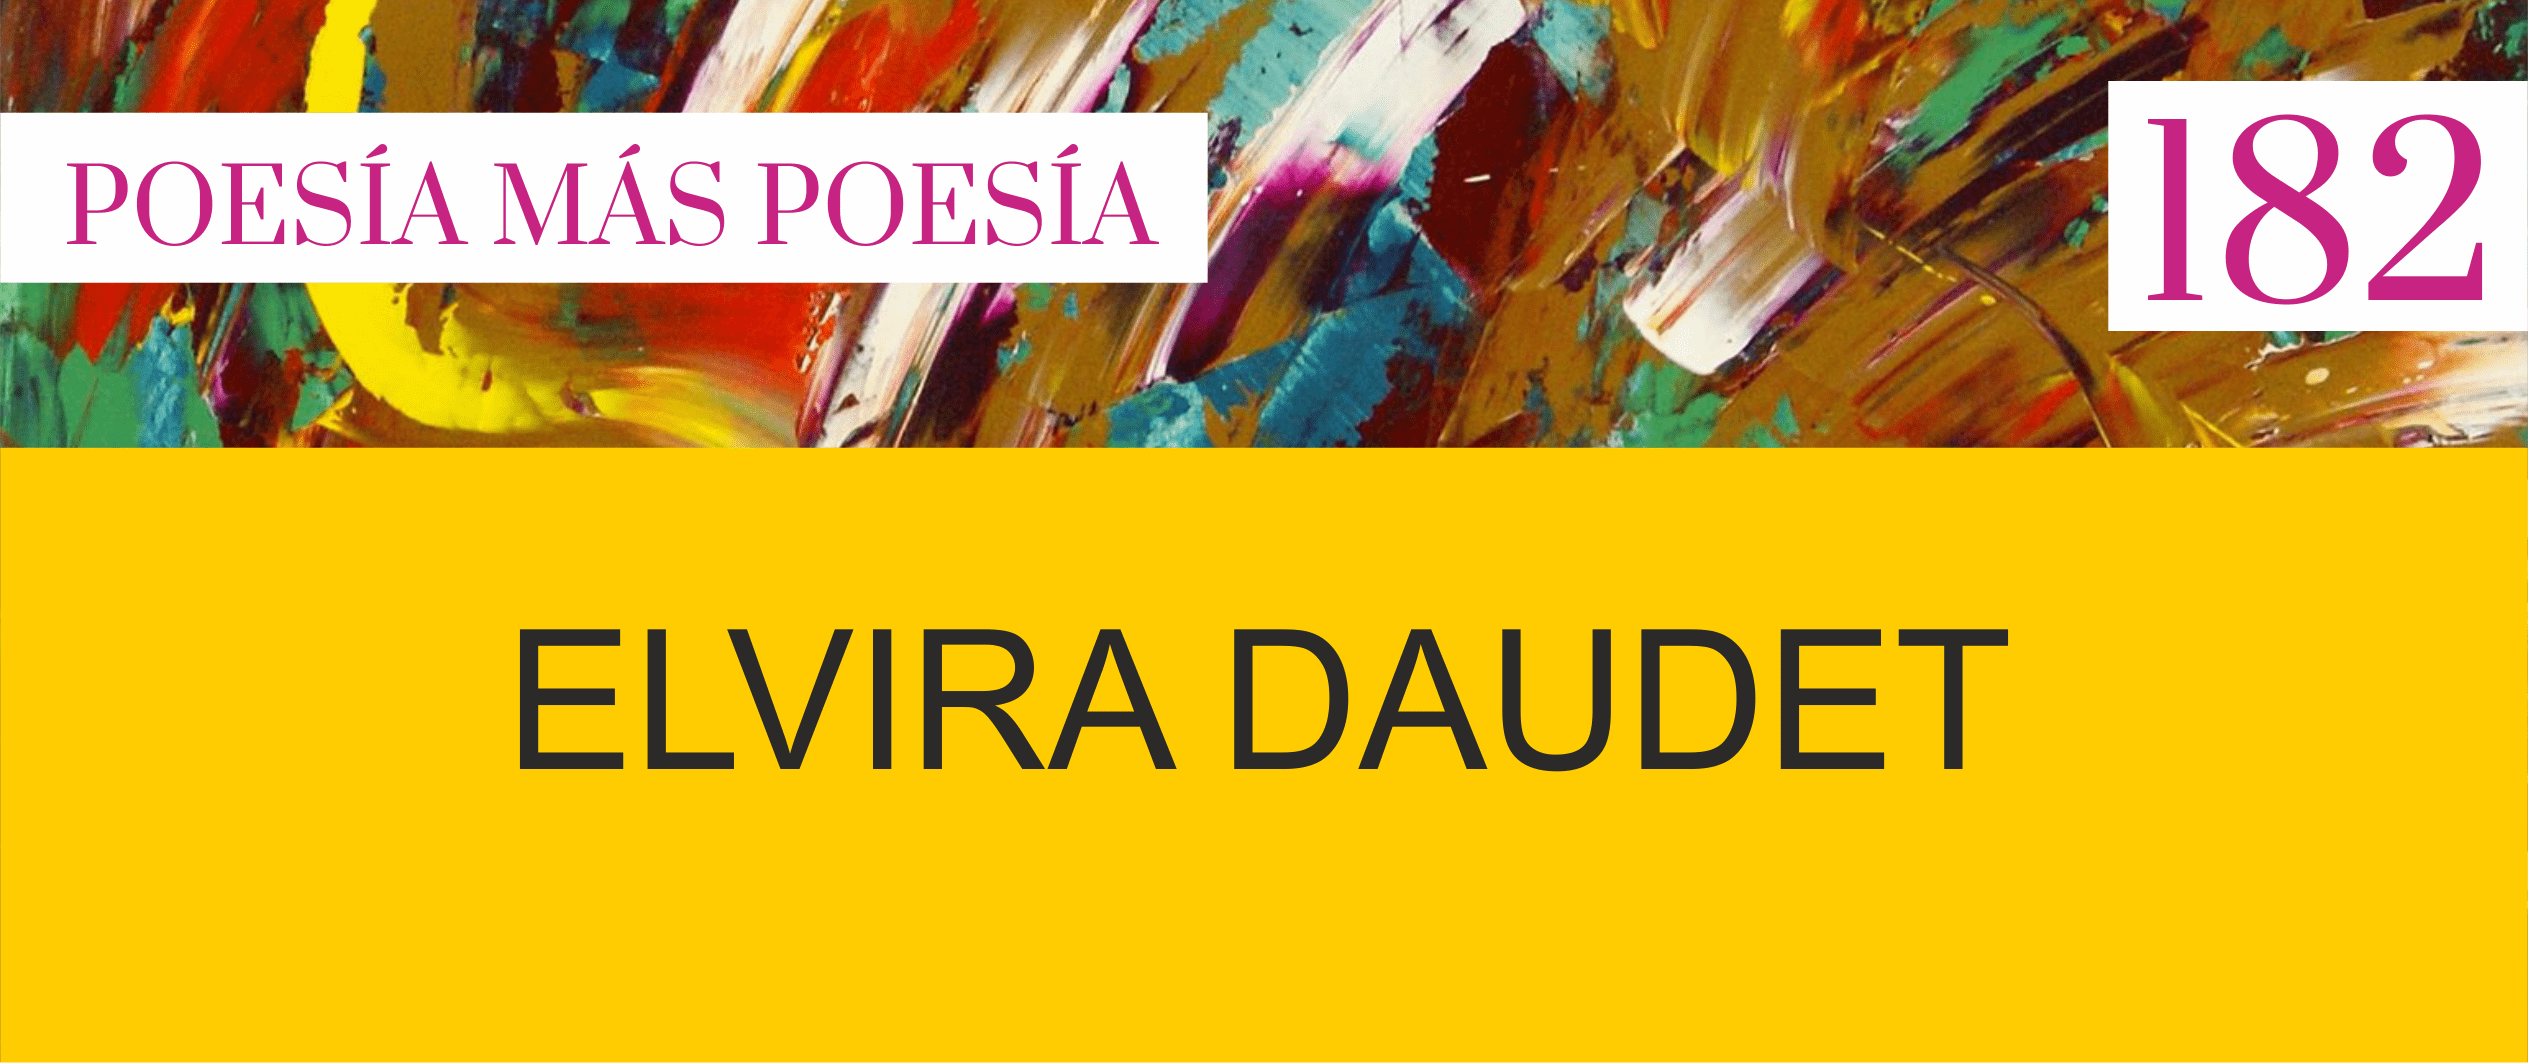 182. Poesía más Poesía: Elvira Daudet